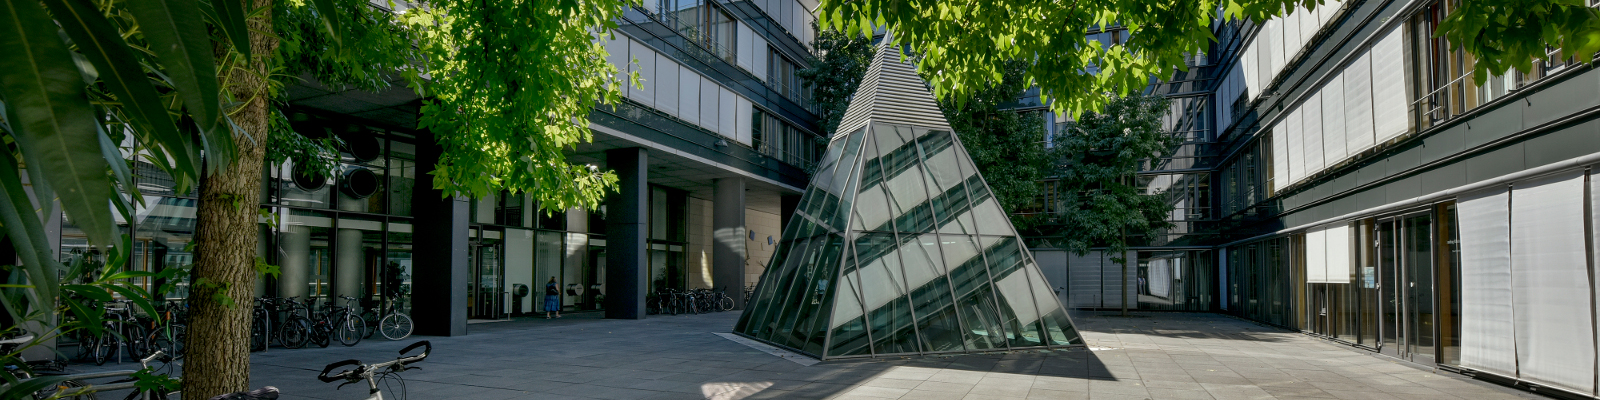 Glaspyramide im Hof des Abgeordnetengebäudes